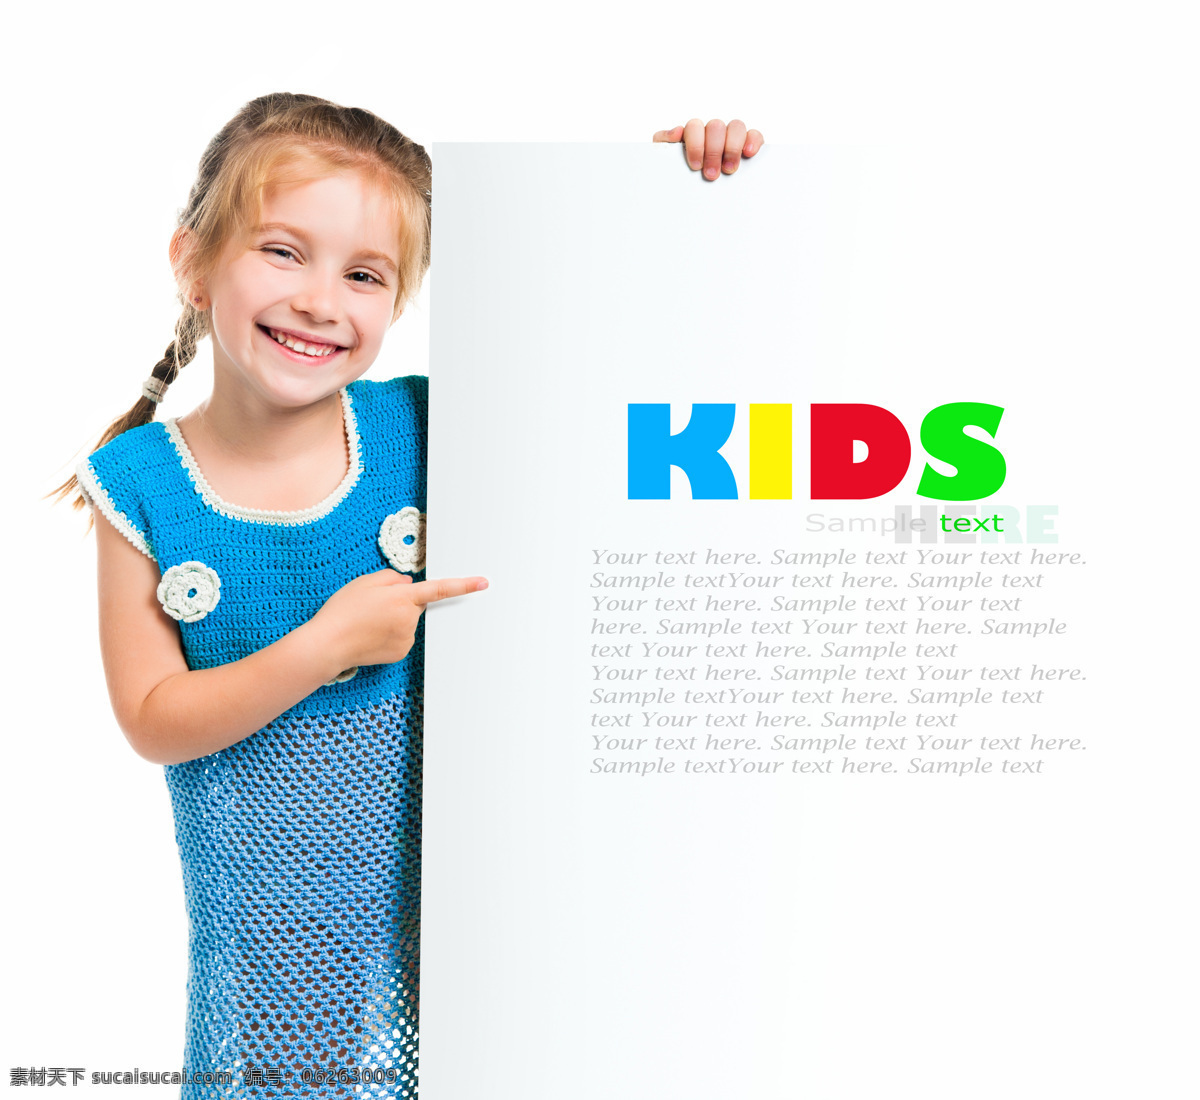 儿童广告板 儿童 广告板 拿着广告板 广告板和孩子 孩子和广告板 可爱儿童 微笑儿童 快乐儿童 小学生 学生 开心 微笑 人物图库 人物摄影